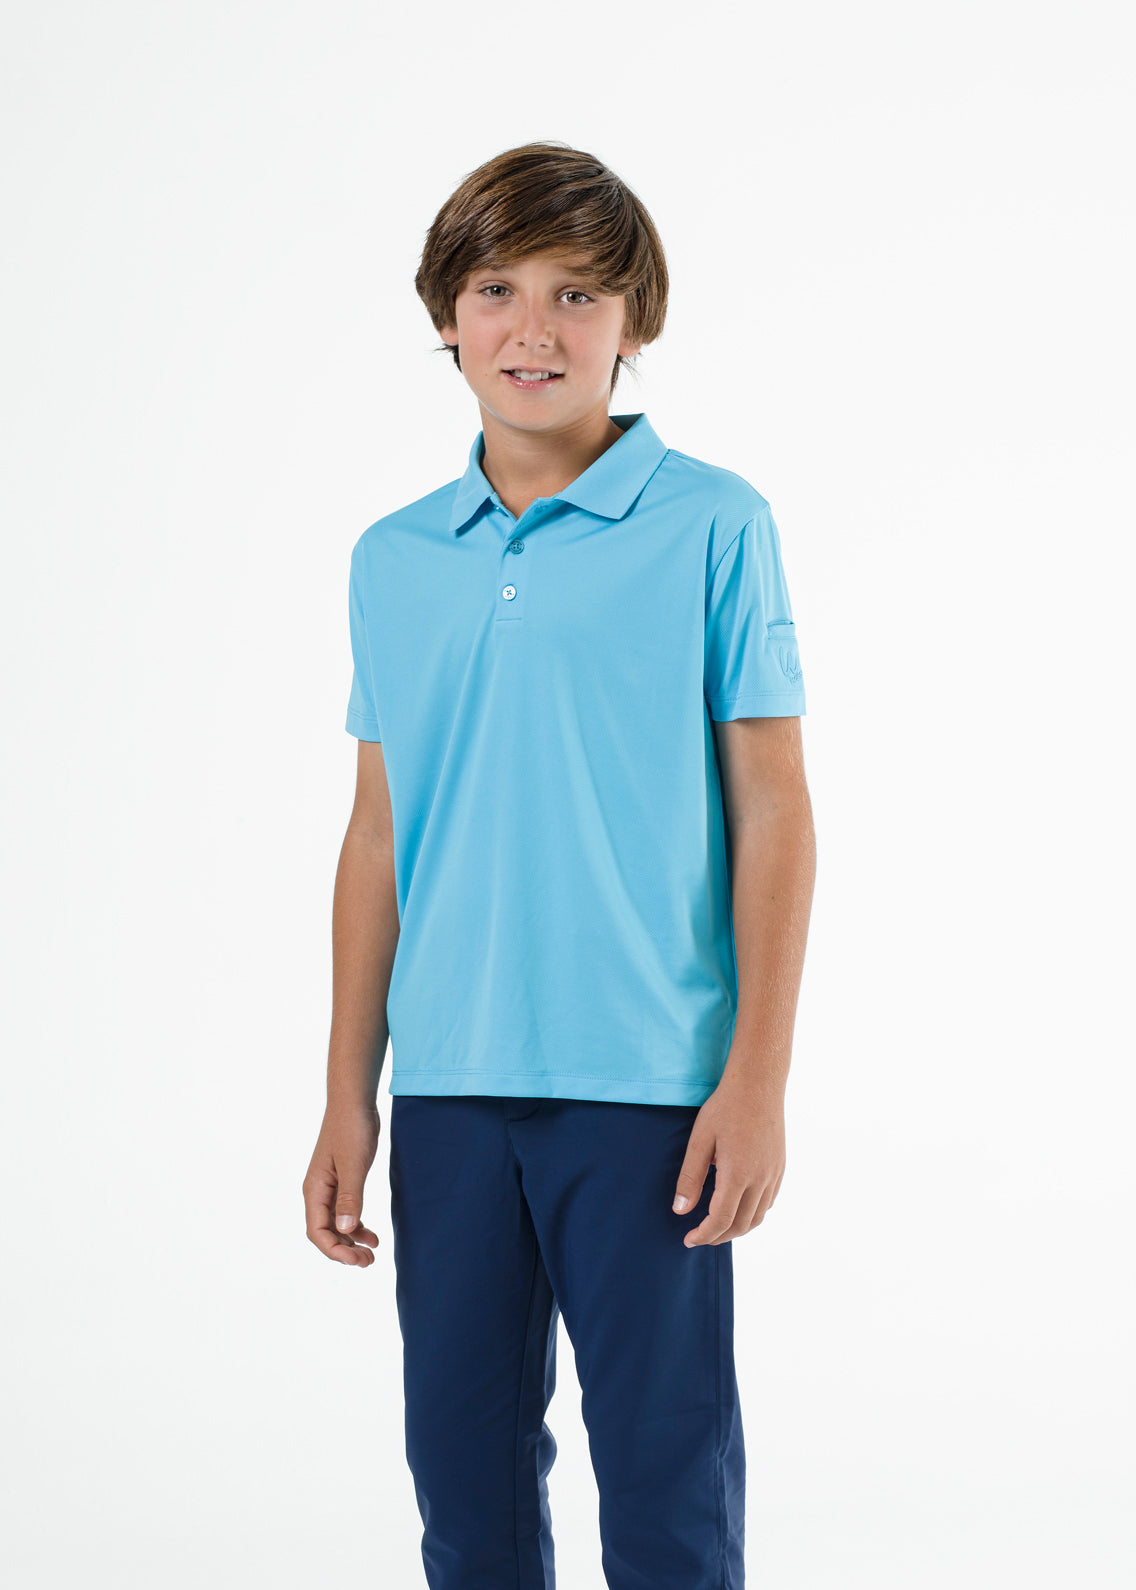 Blue basic golf polo shirt for boys